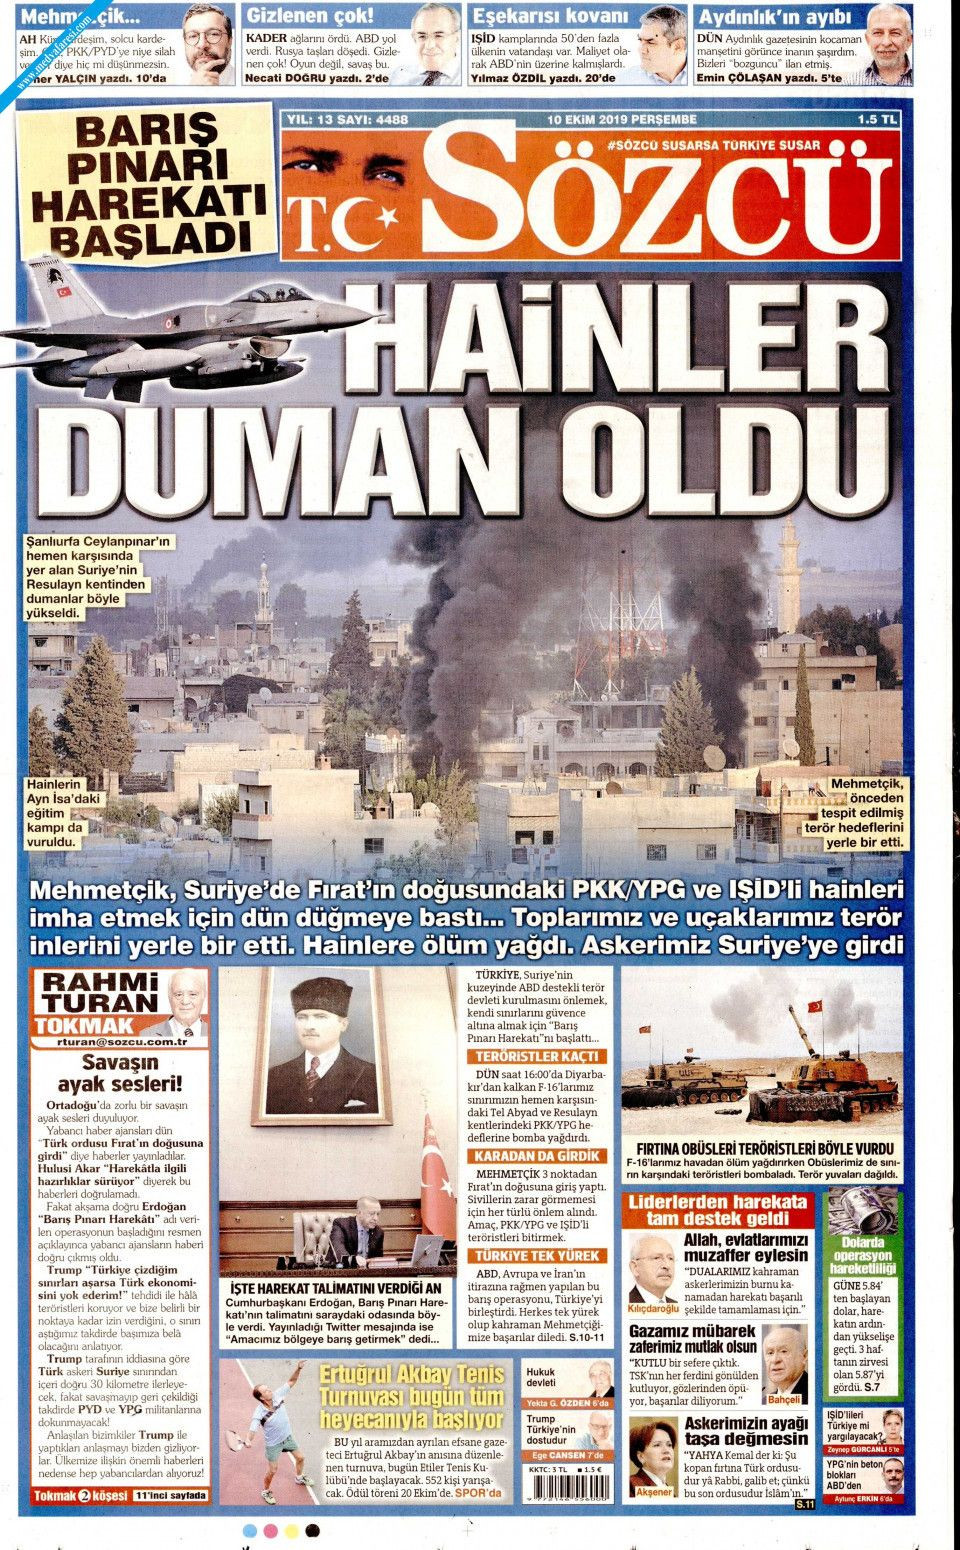 Barış Pınarı Harekatı'nı gazeteler nasıl gördü? - Sayfa 2